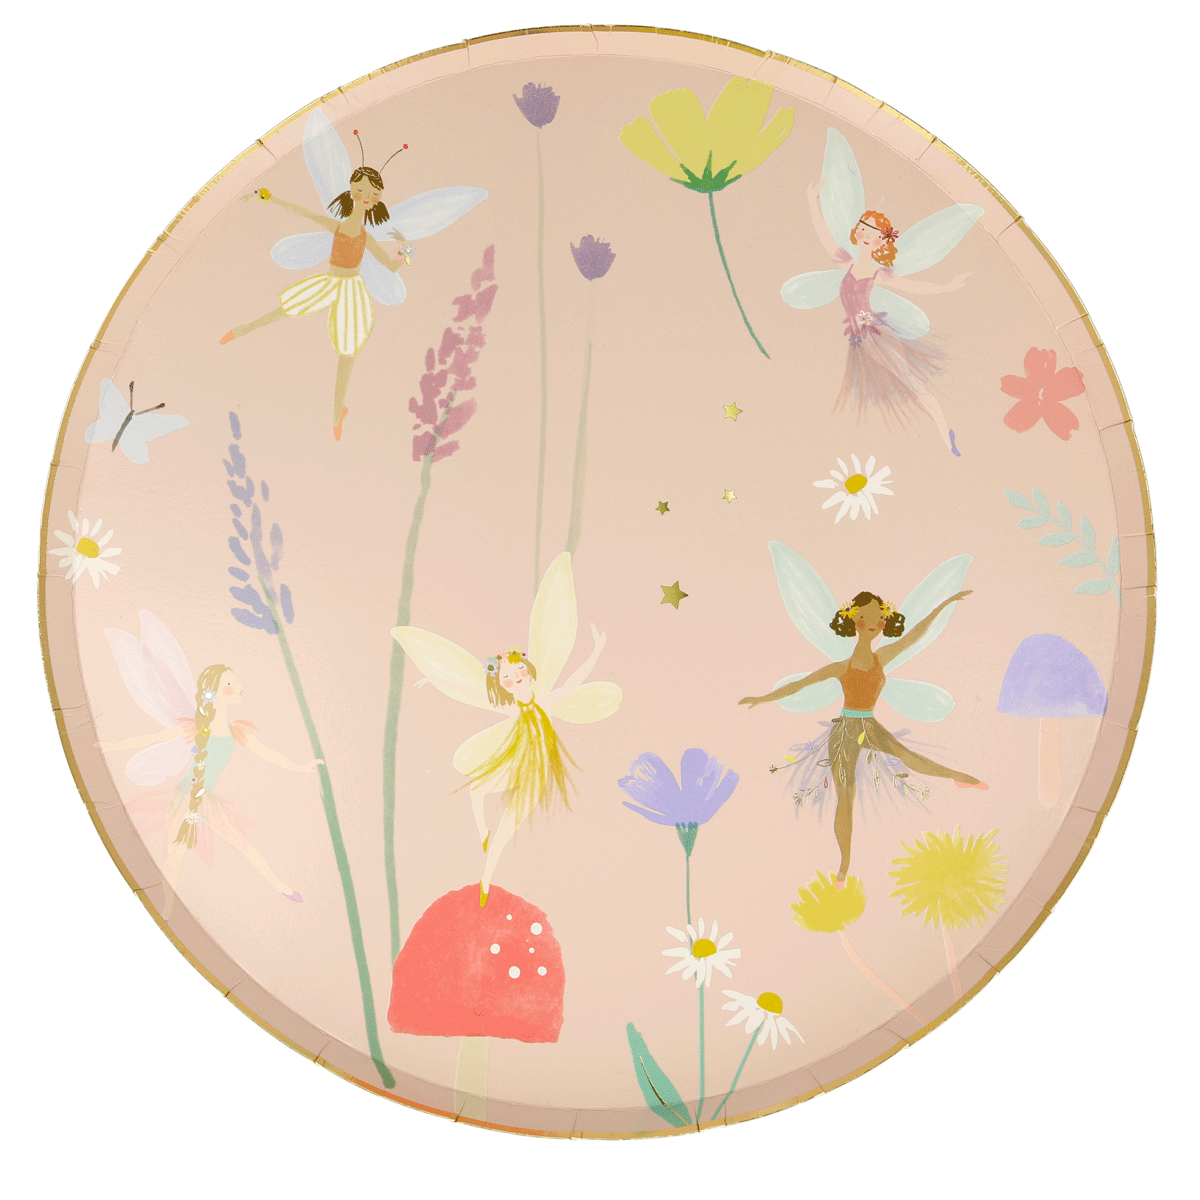 Meri meri Fairy Party Plates